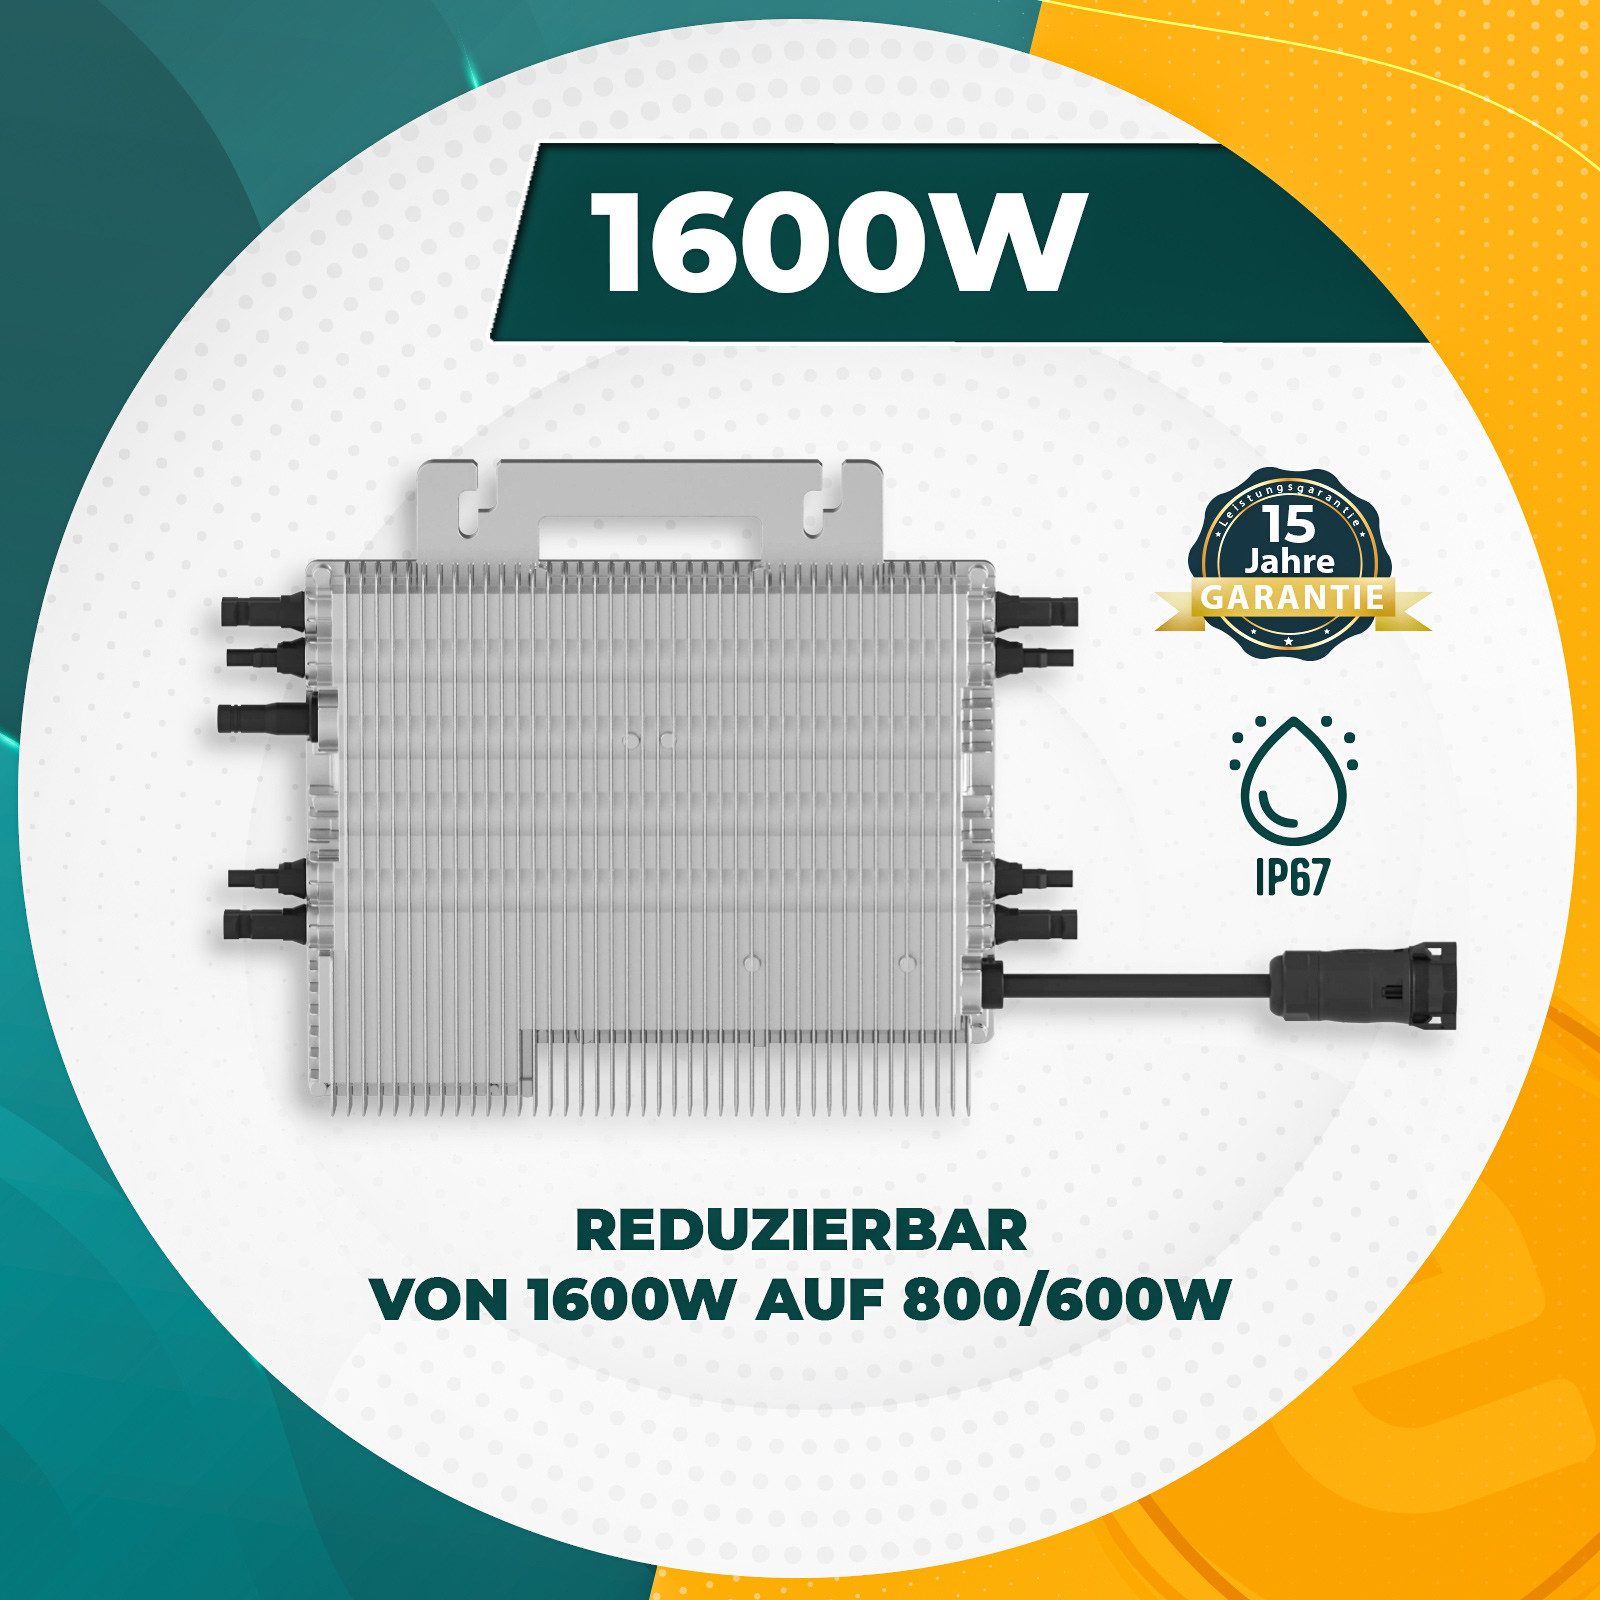 enprovesolar WLAN-Dongle Deye Wechselrichter 1600W SUN-M160G4-EU-Q0, Photovoltaik WIFI Mikrowechselrichter (drosselbar auf 800W/600W)